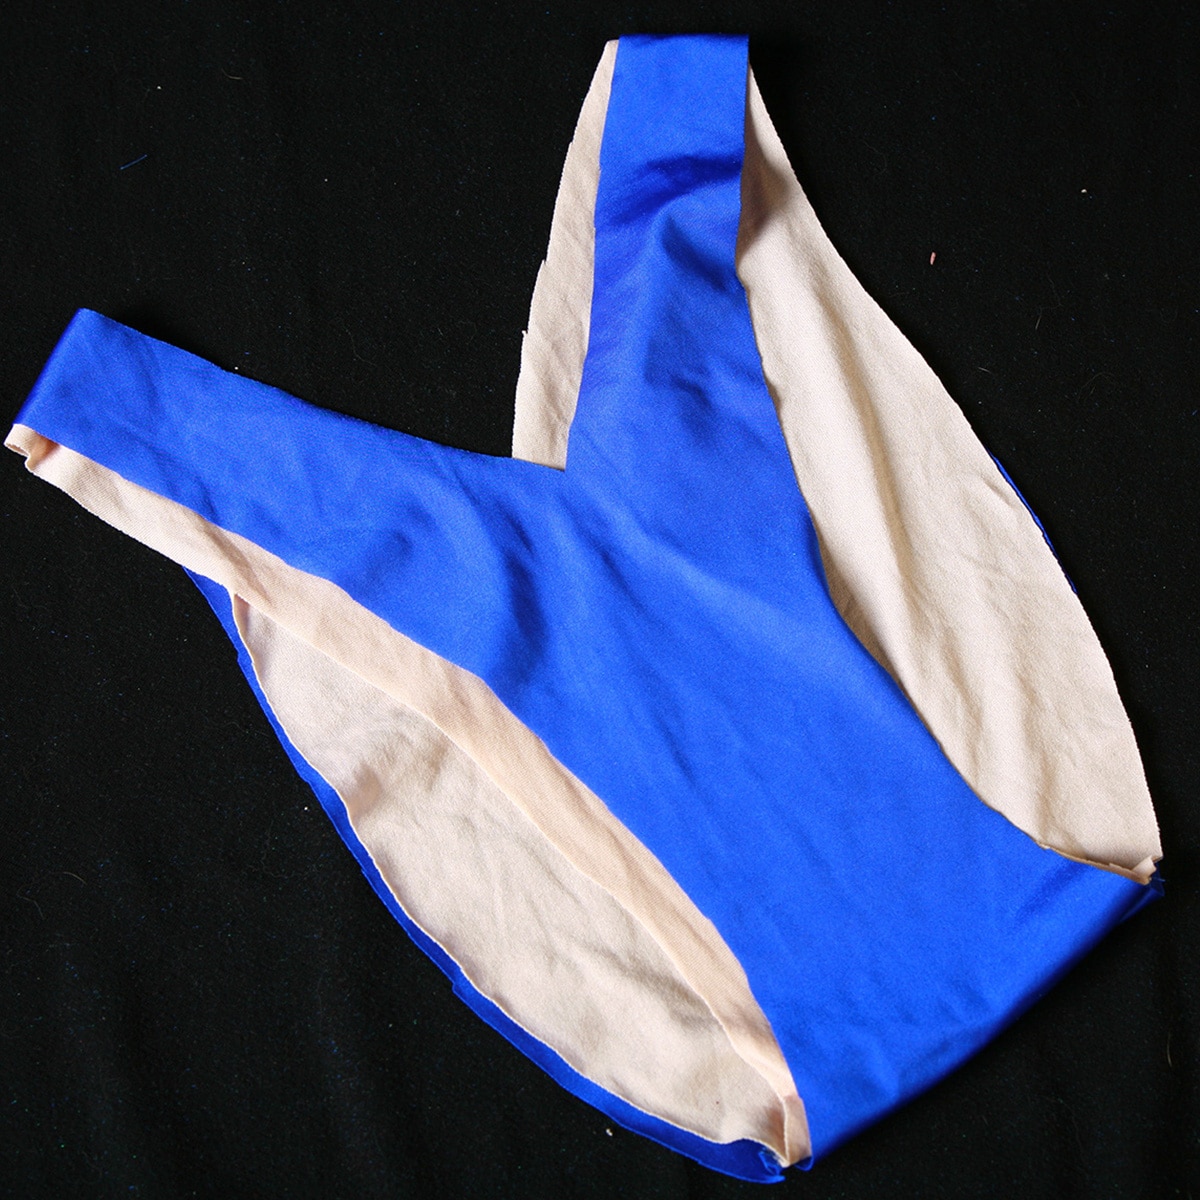 A blue v cut bikini bottom, with no elastic in it.